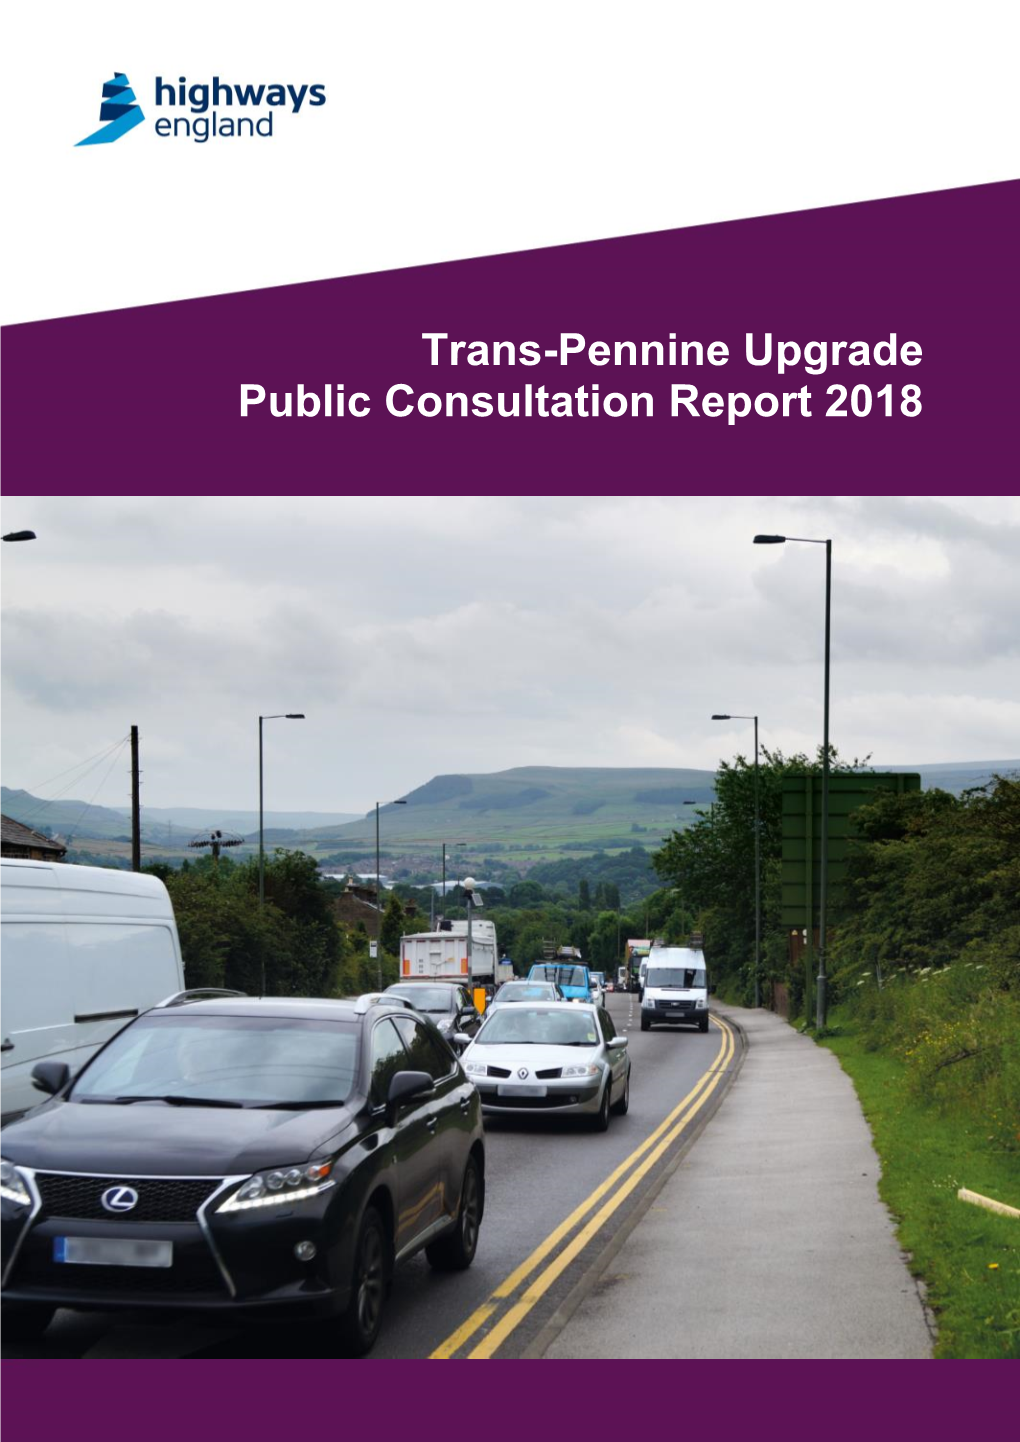 Trans-Pennine Upgrade Public Consultation Report 2018